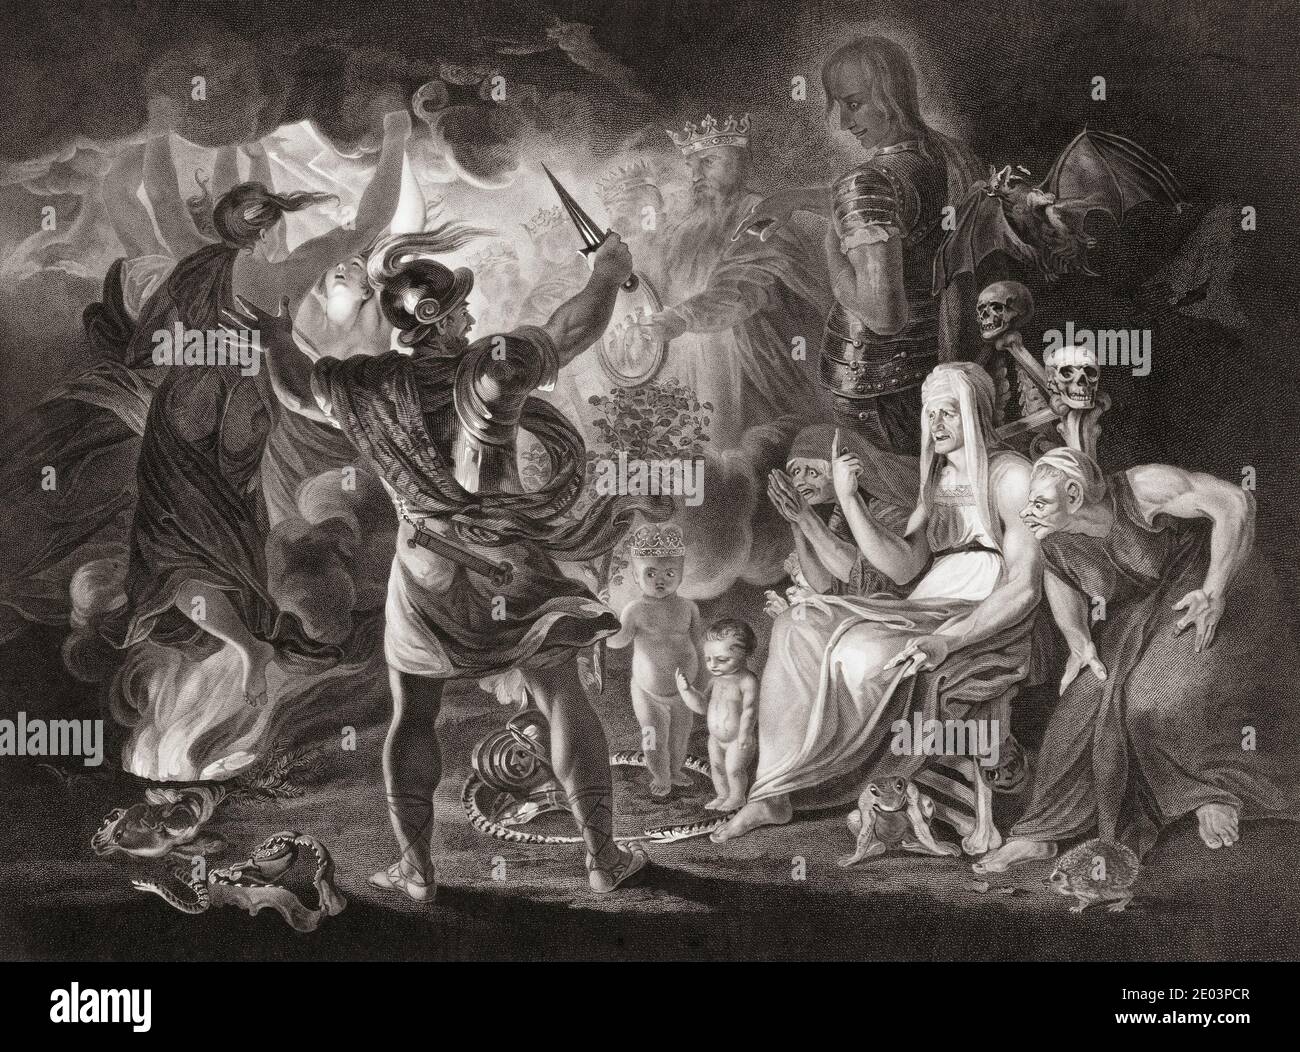 Illustration für William Shakespeares Stück Macbeth, IV. Akt, Szene I. aus einem Stich von Robert Thew aus dem 18. Jahrhundert nach einem Werk von Sir Joshua Reynolds. Stockfoto